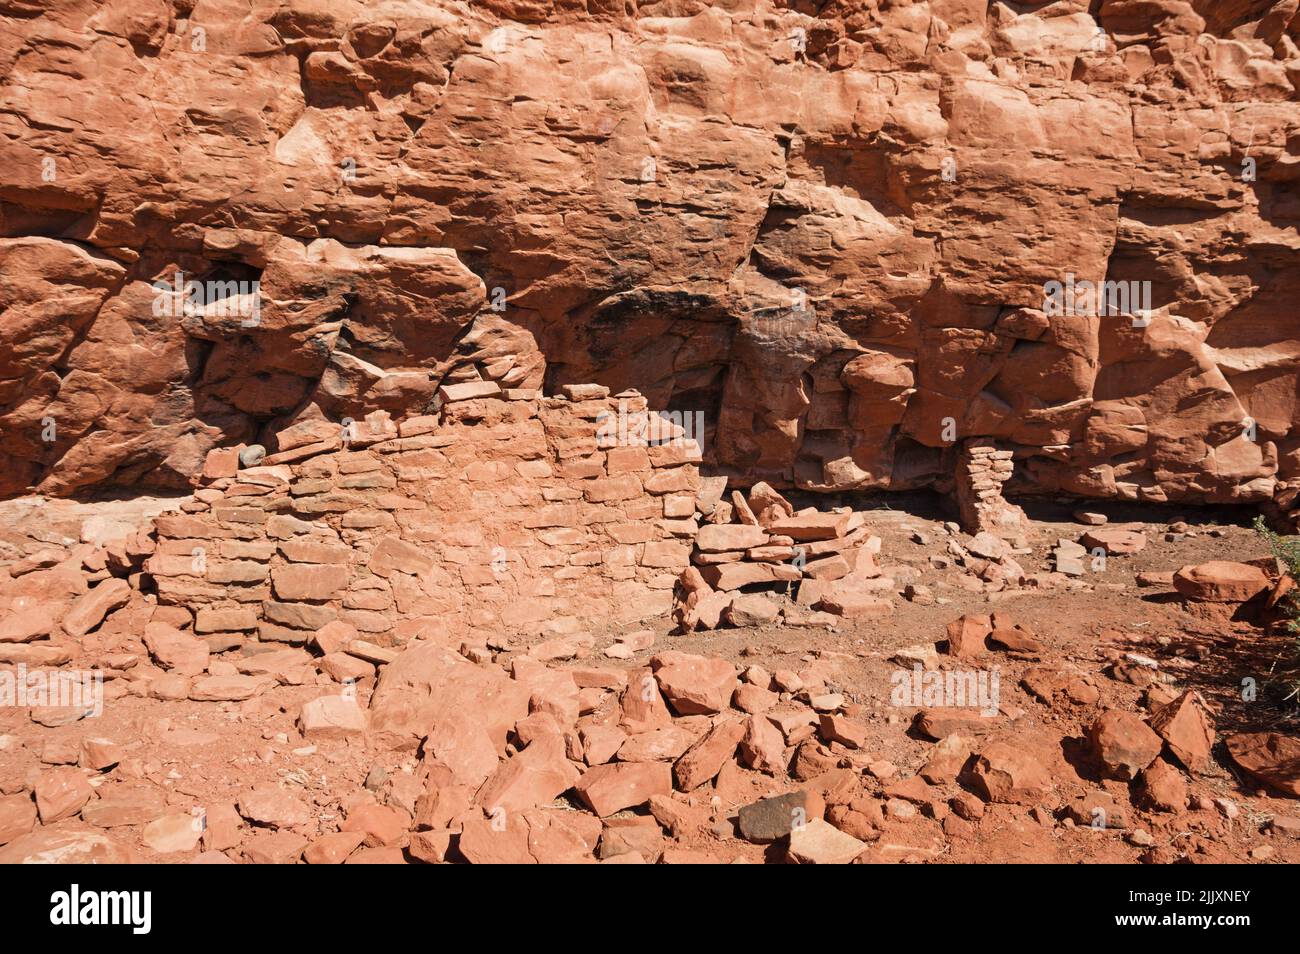 Ruines américaines indigènes sur les flancs du palais de justice Butte près de Sedona, Arizona Banque D'Images